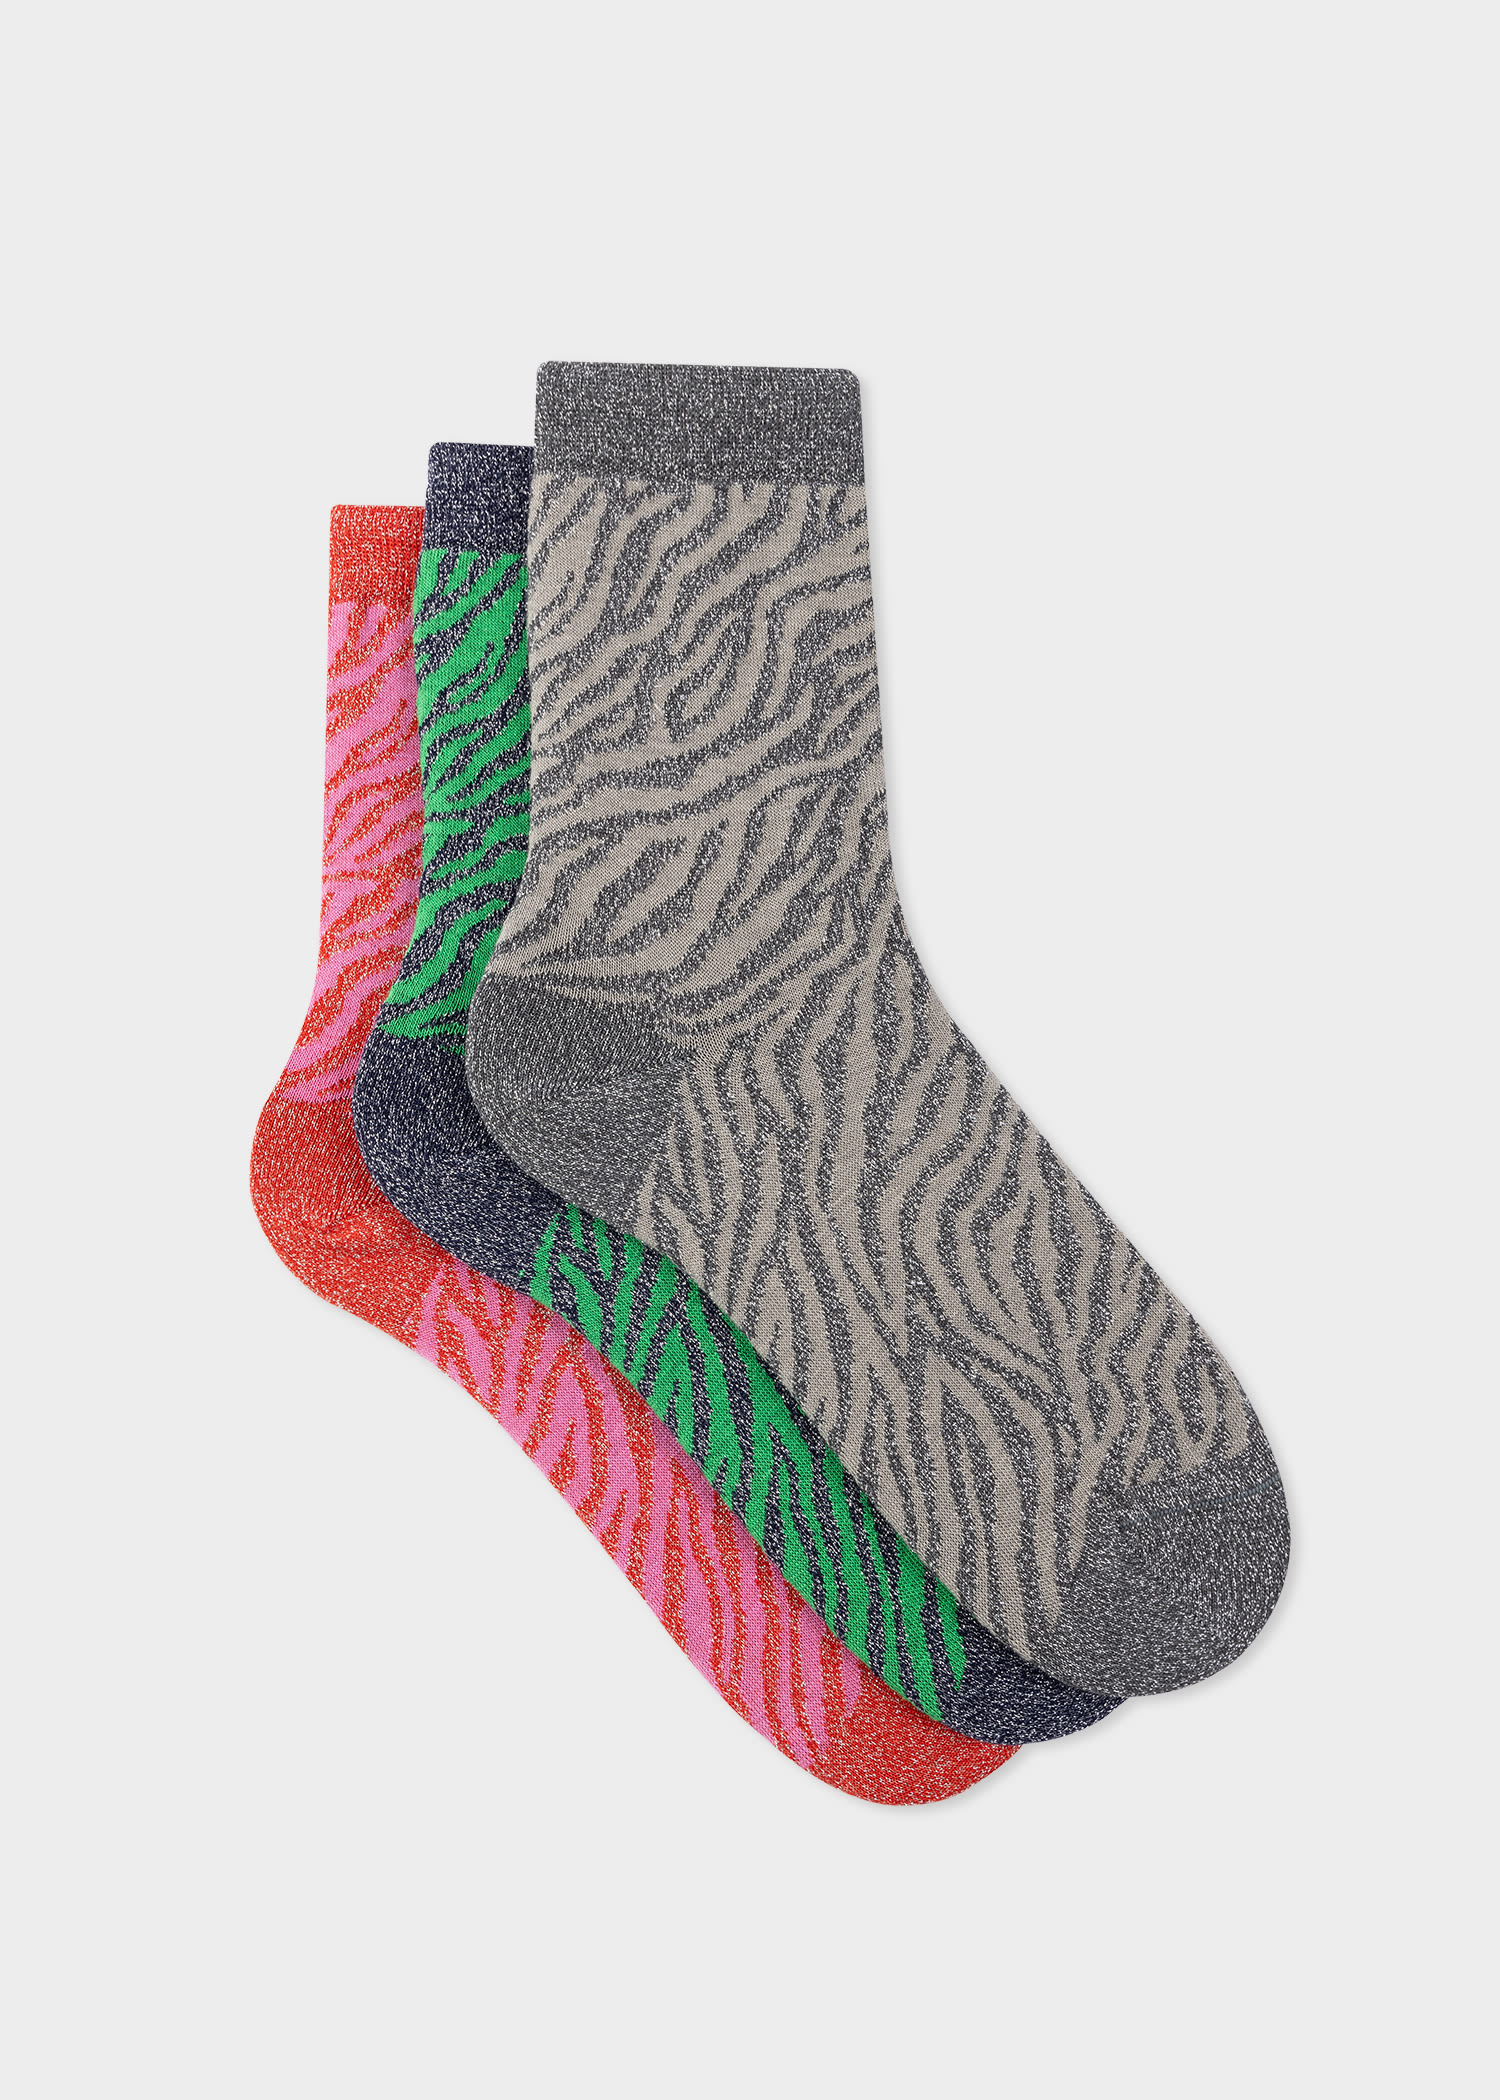 Paul Smith Women's Zebra Glitter Socks Three Pack Multicolour